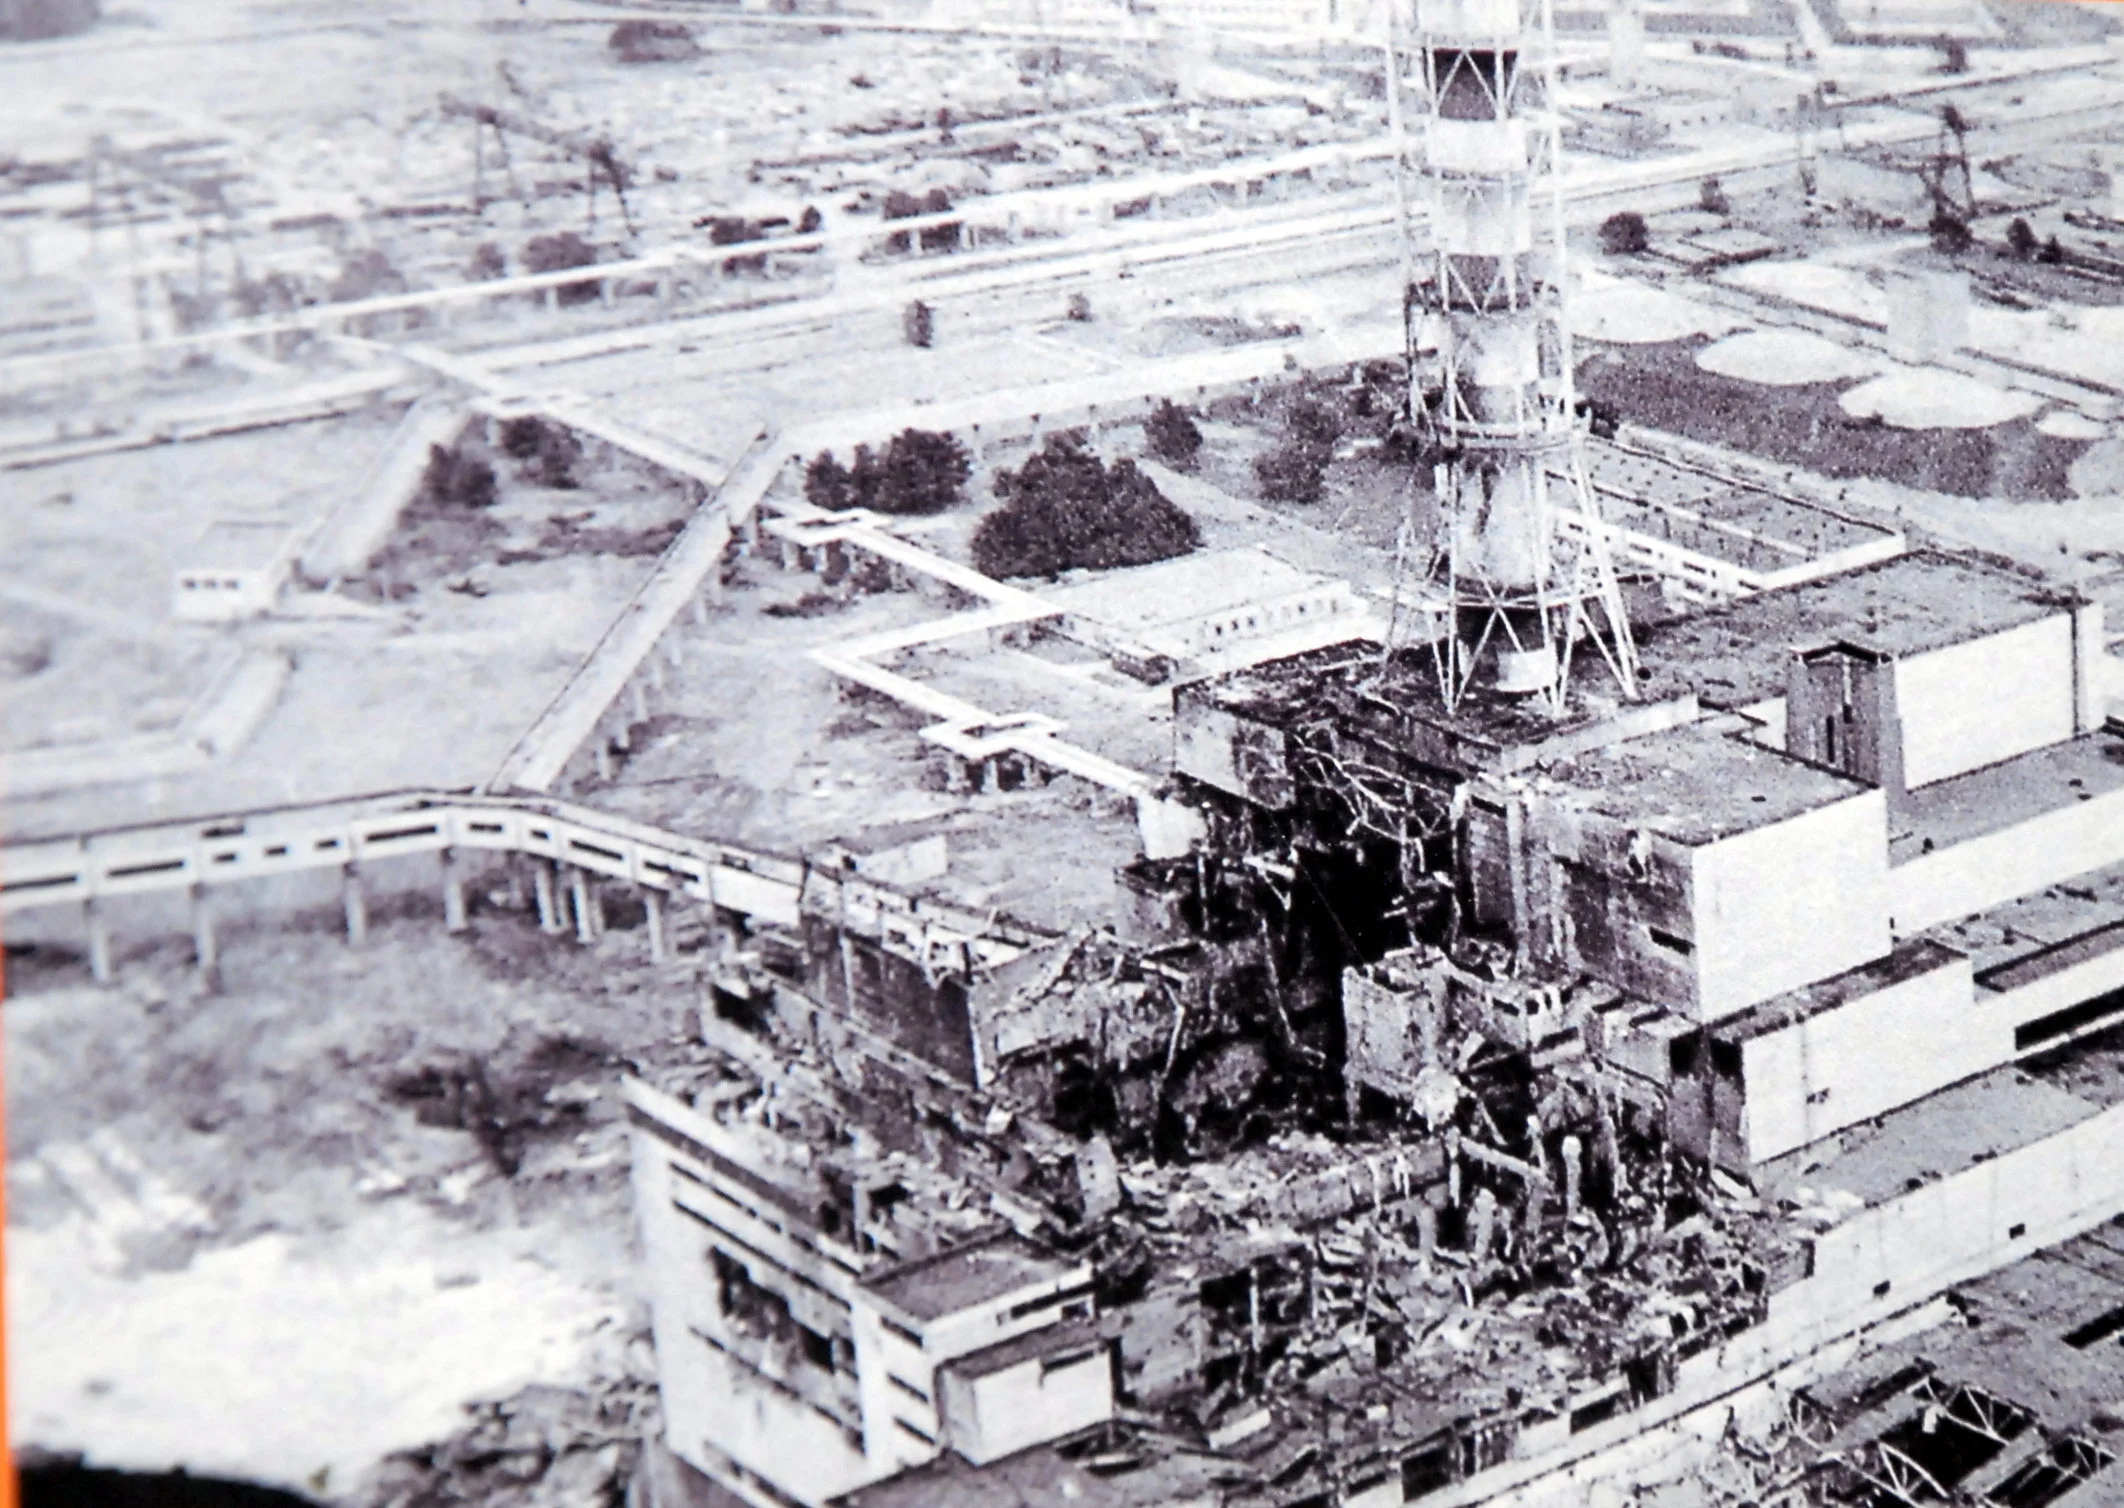 26 апреля 1986 года взорвался четвертый реактор Чернобыльской АЭС. Из-за выбросов радиоактивных веществ эвакуировали город Припять, жители которого обслуживали станцию, а зону в радиусе 30 км от атомной станции закрыли для всех. При самой аварии погиб 31 человек, но после катастрофы облучились и погибли в страданиях тысячи людей, а десятки тысяч с тех пор имели большие проблемы со здоровьем. 